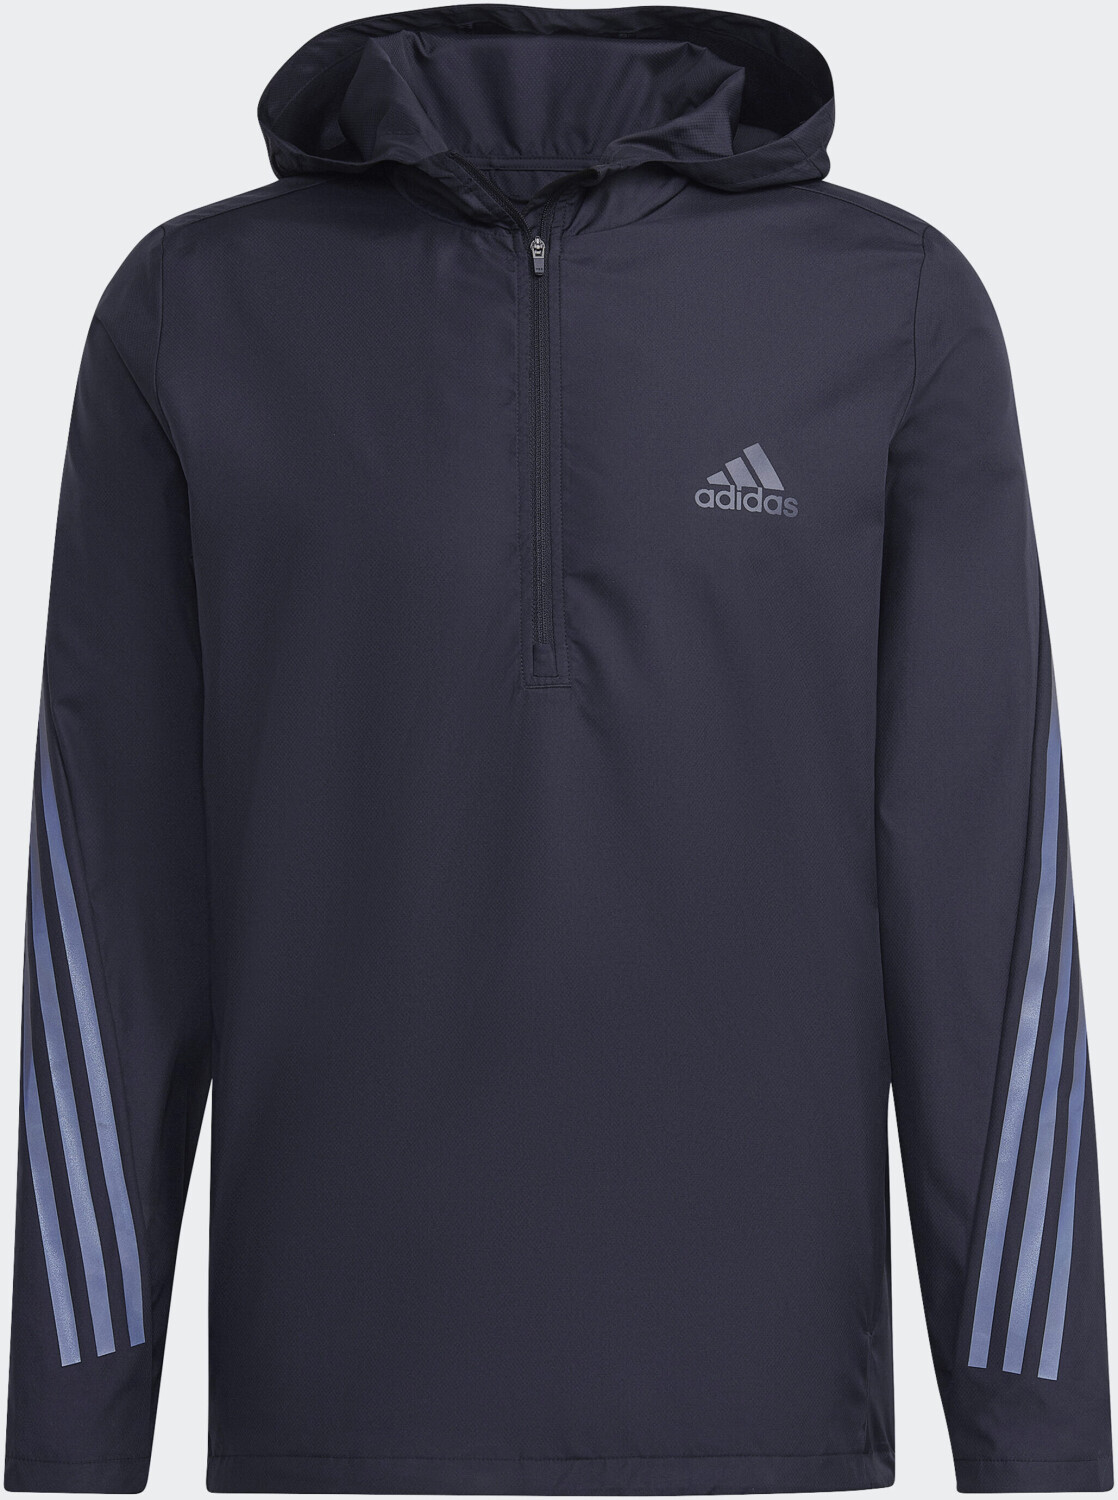 53,49 Run Adidas € Men Icons bei | Jacket 3-Stripe ab Preisvergleich black